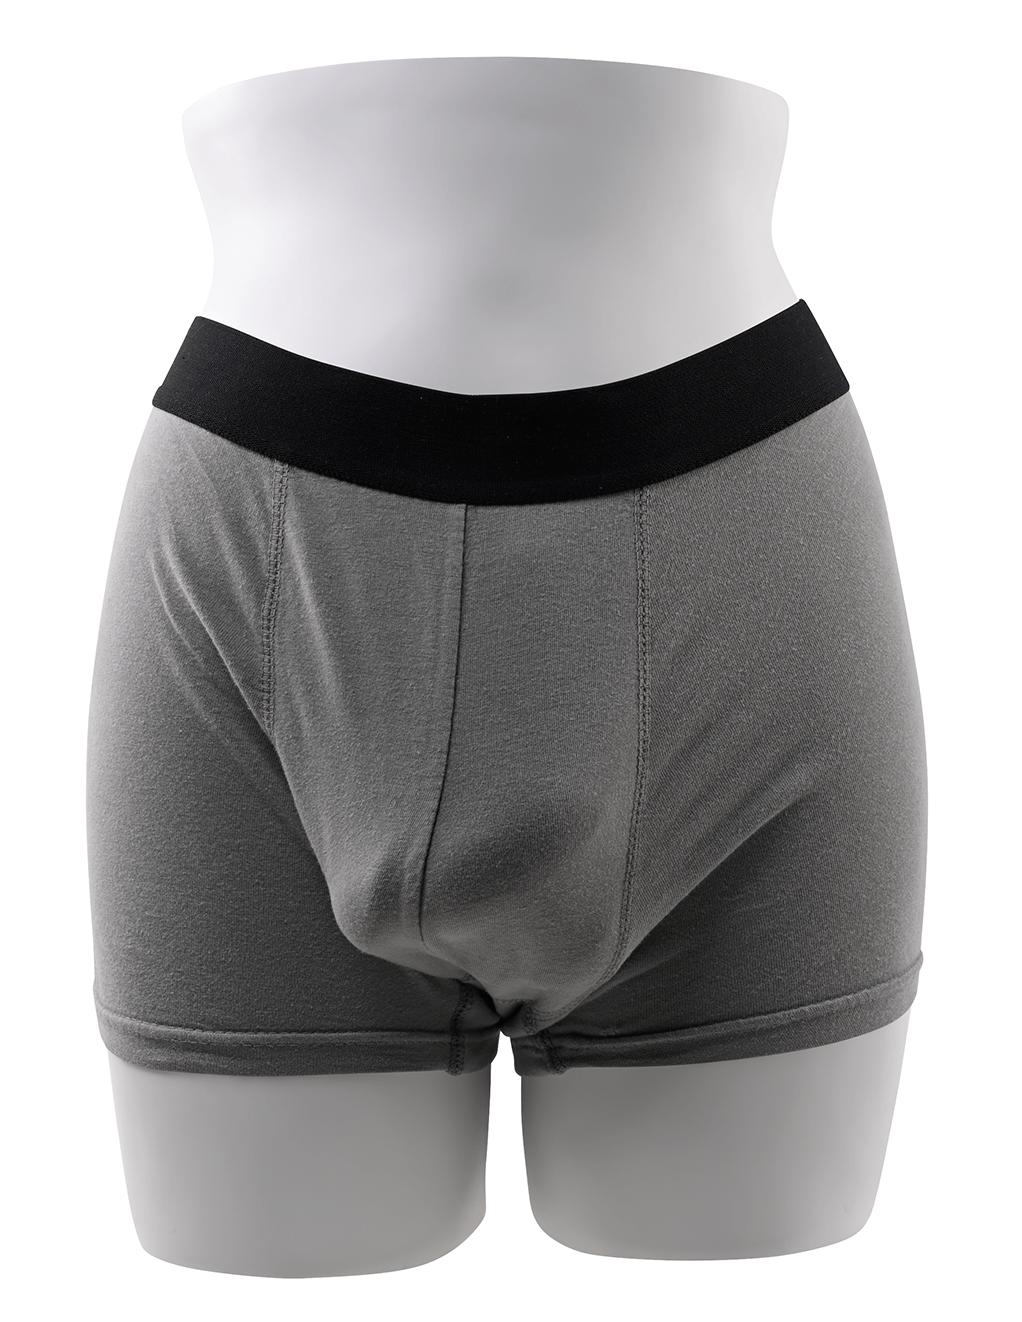 Gender X 4" Packer - In Underwear